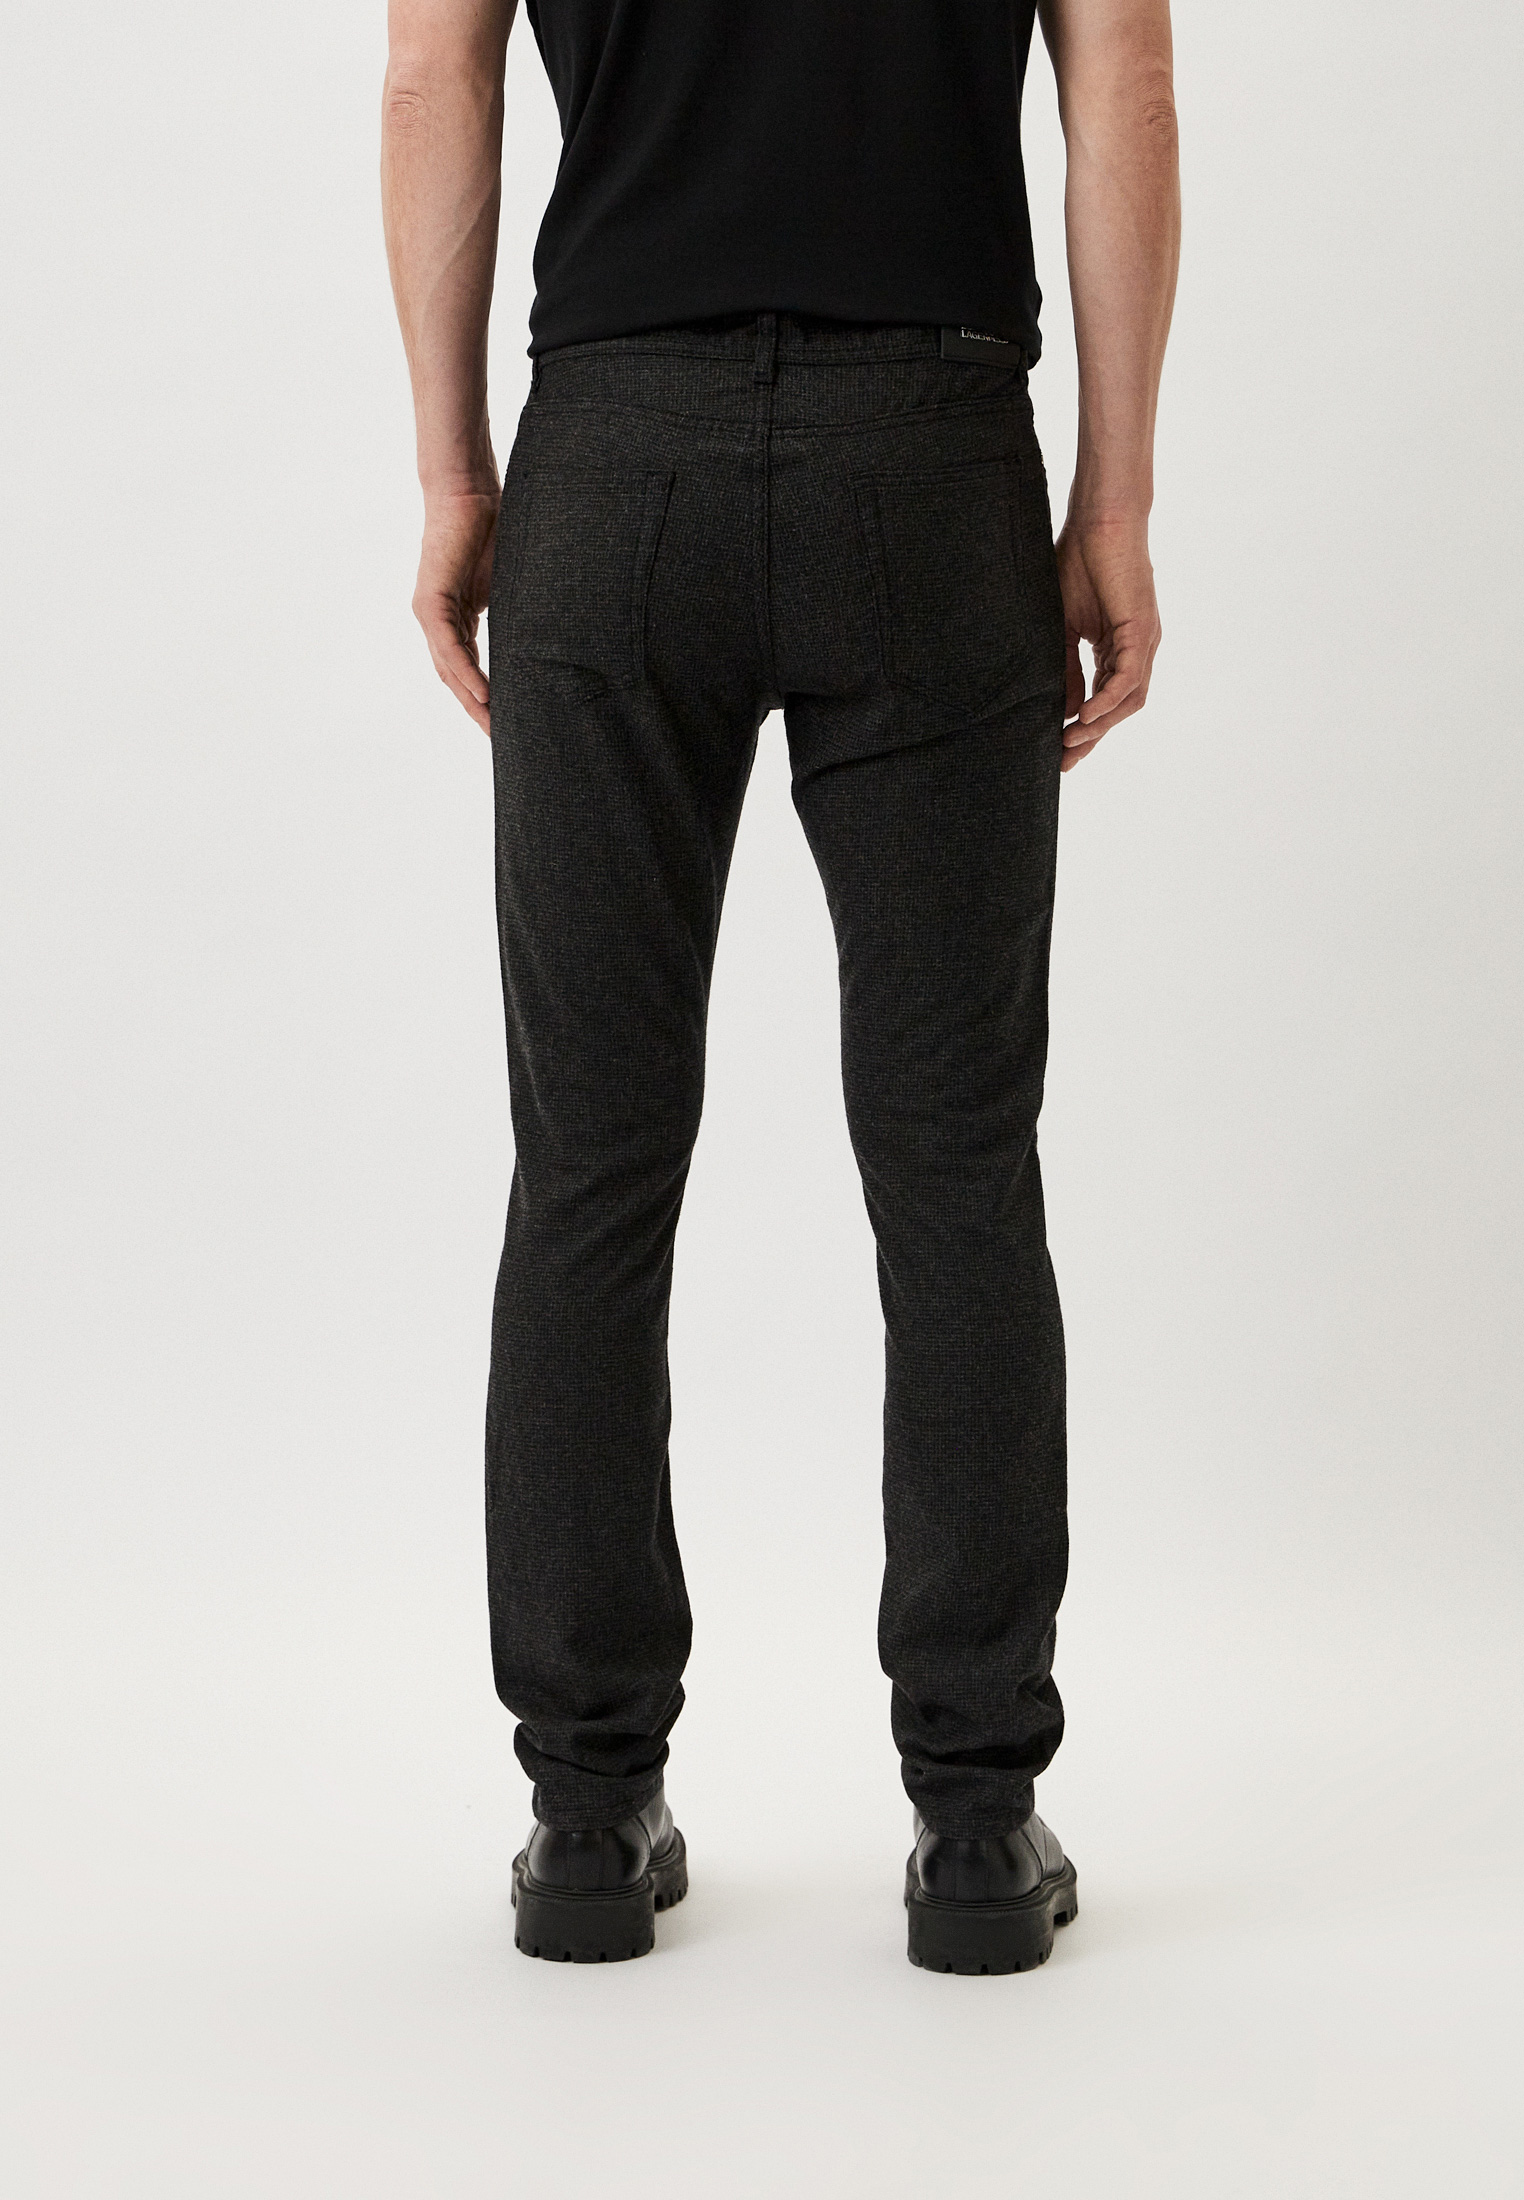 Мужские повседневные брюки Karl Lagerfeld (Карл Лагерфельд) 265840-534805: изображение 3